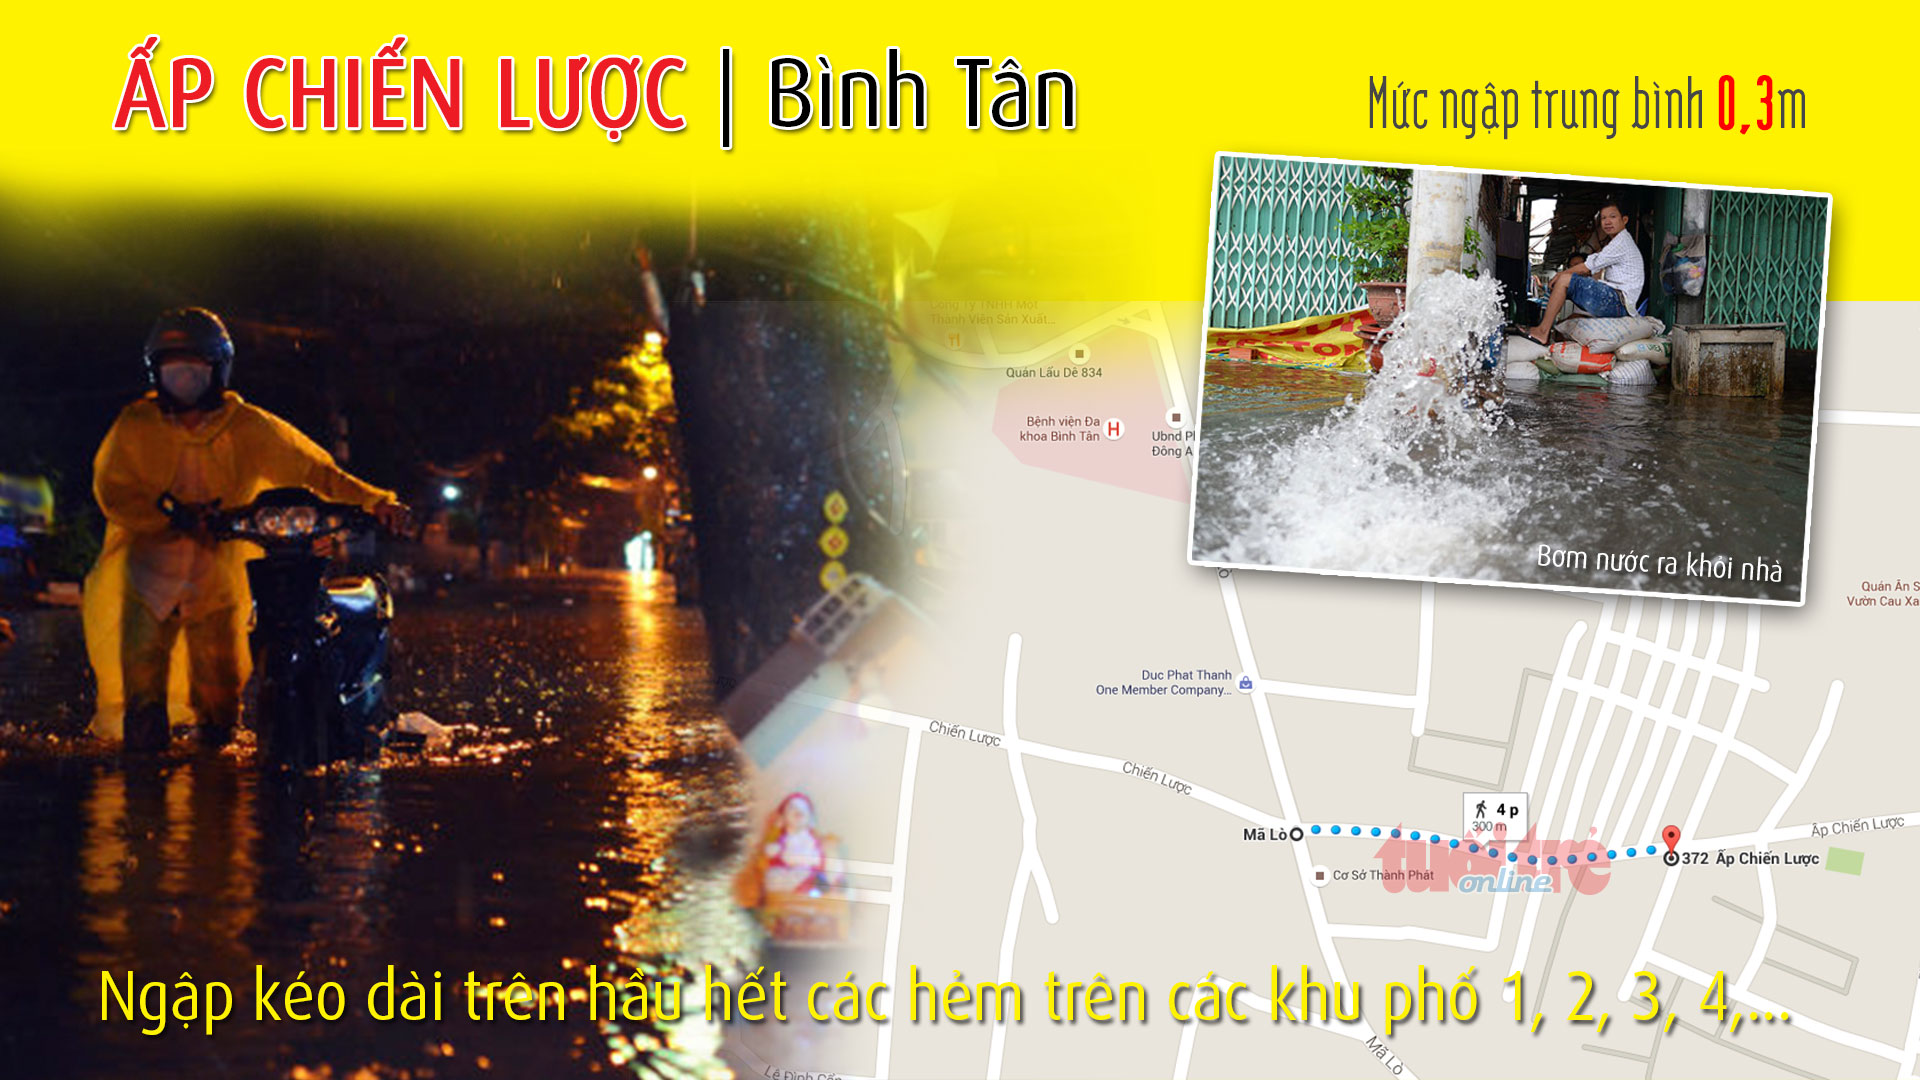 Điểm ngập ở đường Ấp Chiến Lược (Bình Tân), thuộc 1 trong 66 điểm ngập ở TP.HCM trong cơn mưa chiều 15-9-2015 - Đồ họa: Việt Anh - T.Thiên